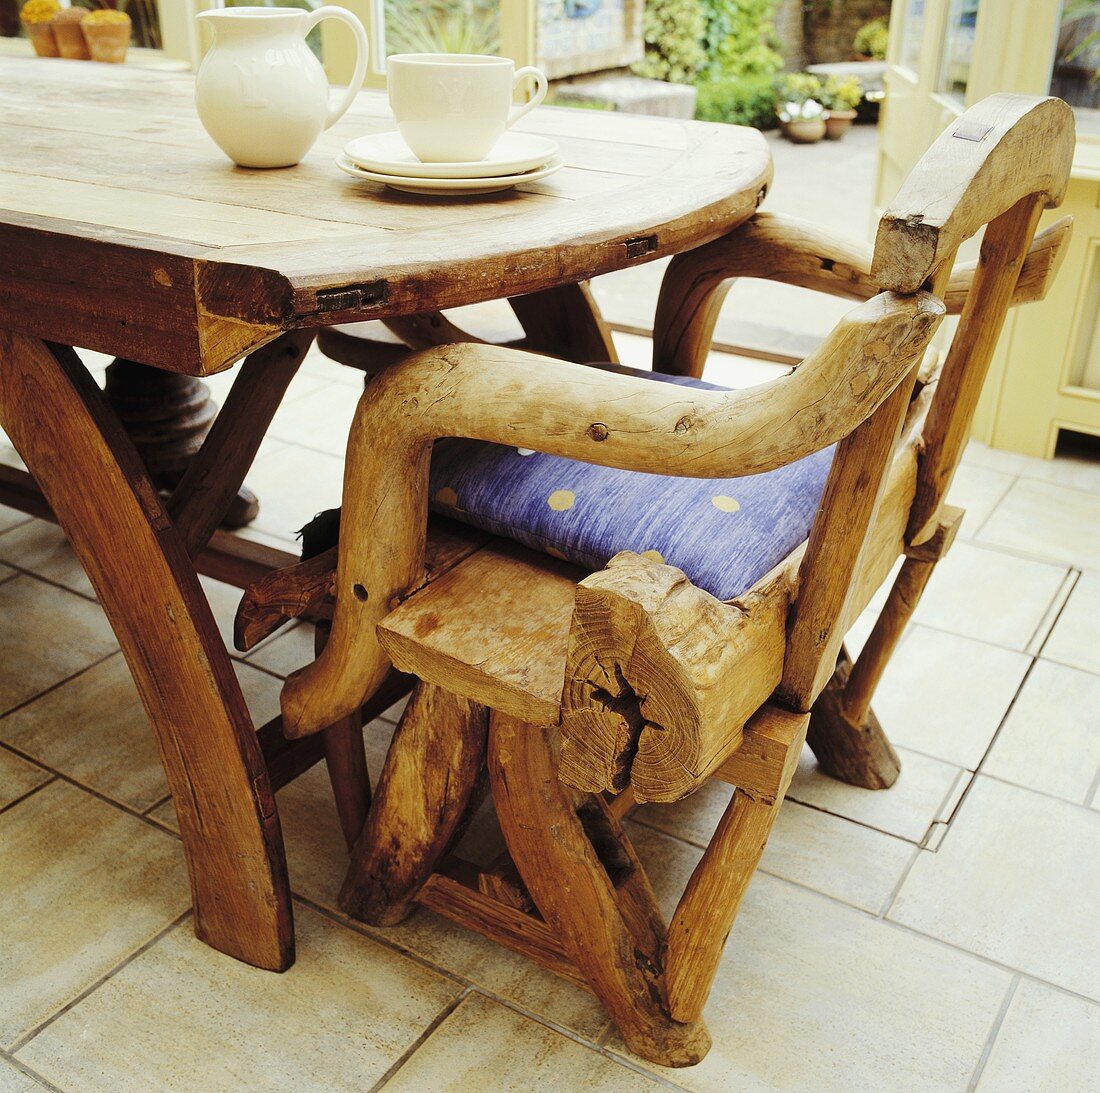 Rustikale Stuhlkonstruktion mit Verwendung gewachsener Äste an Holztisch mit weißem Teeservice